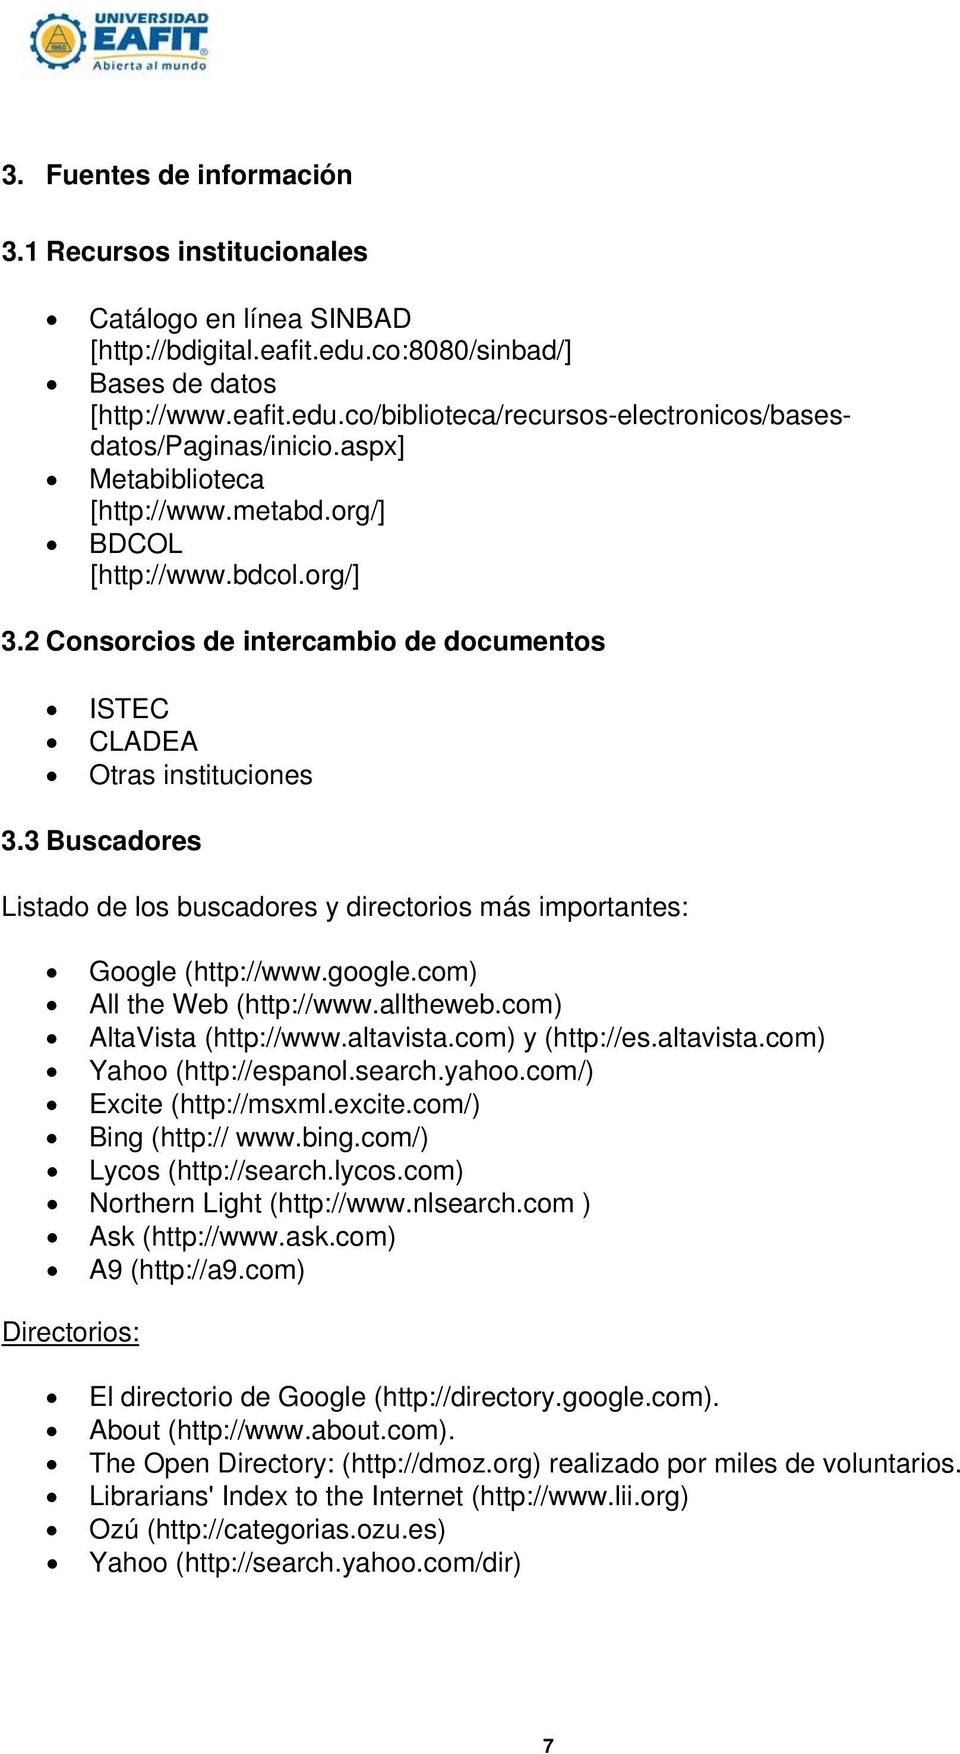 3 Buscadores Listado de los buscadores y directorios más importantes: Google (http://www.google.com) All the Web (http://www.alltheweb.com) AltaVista (http://www.altavista.com) y (http://es.altavista.com) Yahoo (http://espanol.